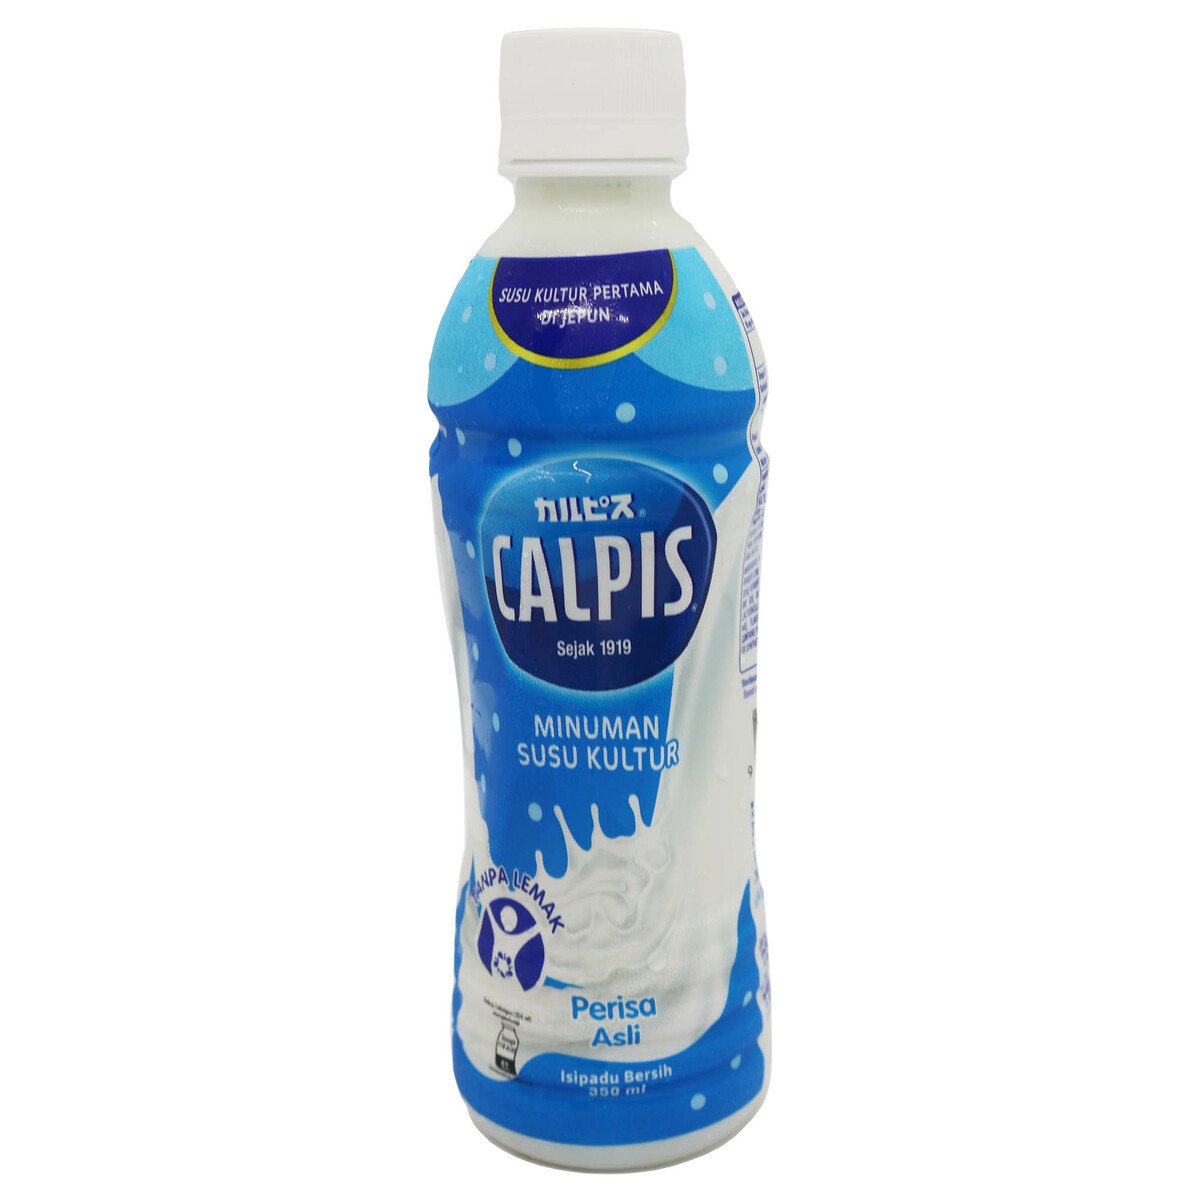 Calpis Original 350ml